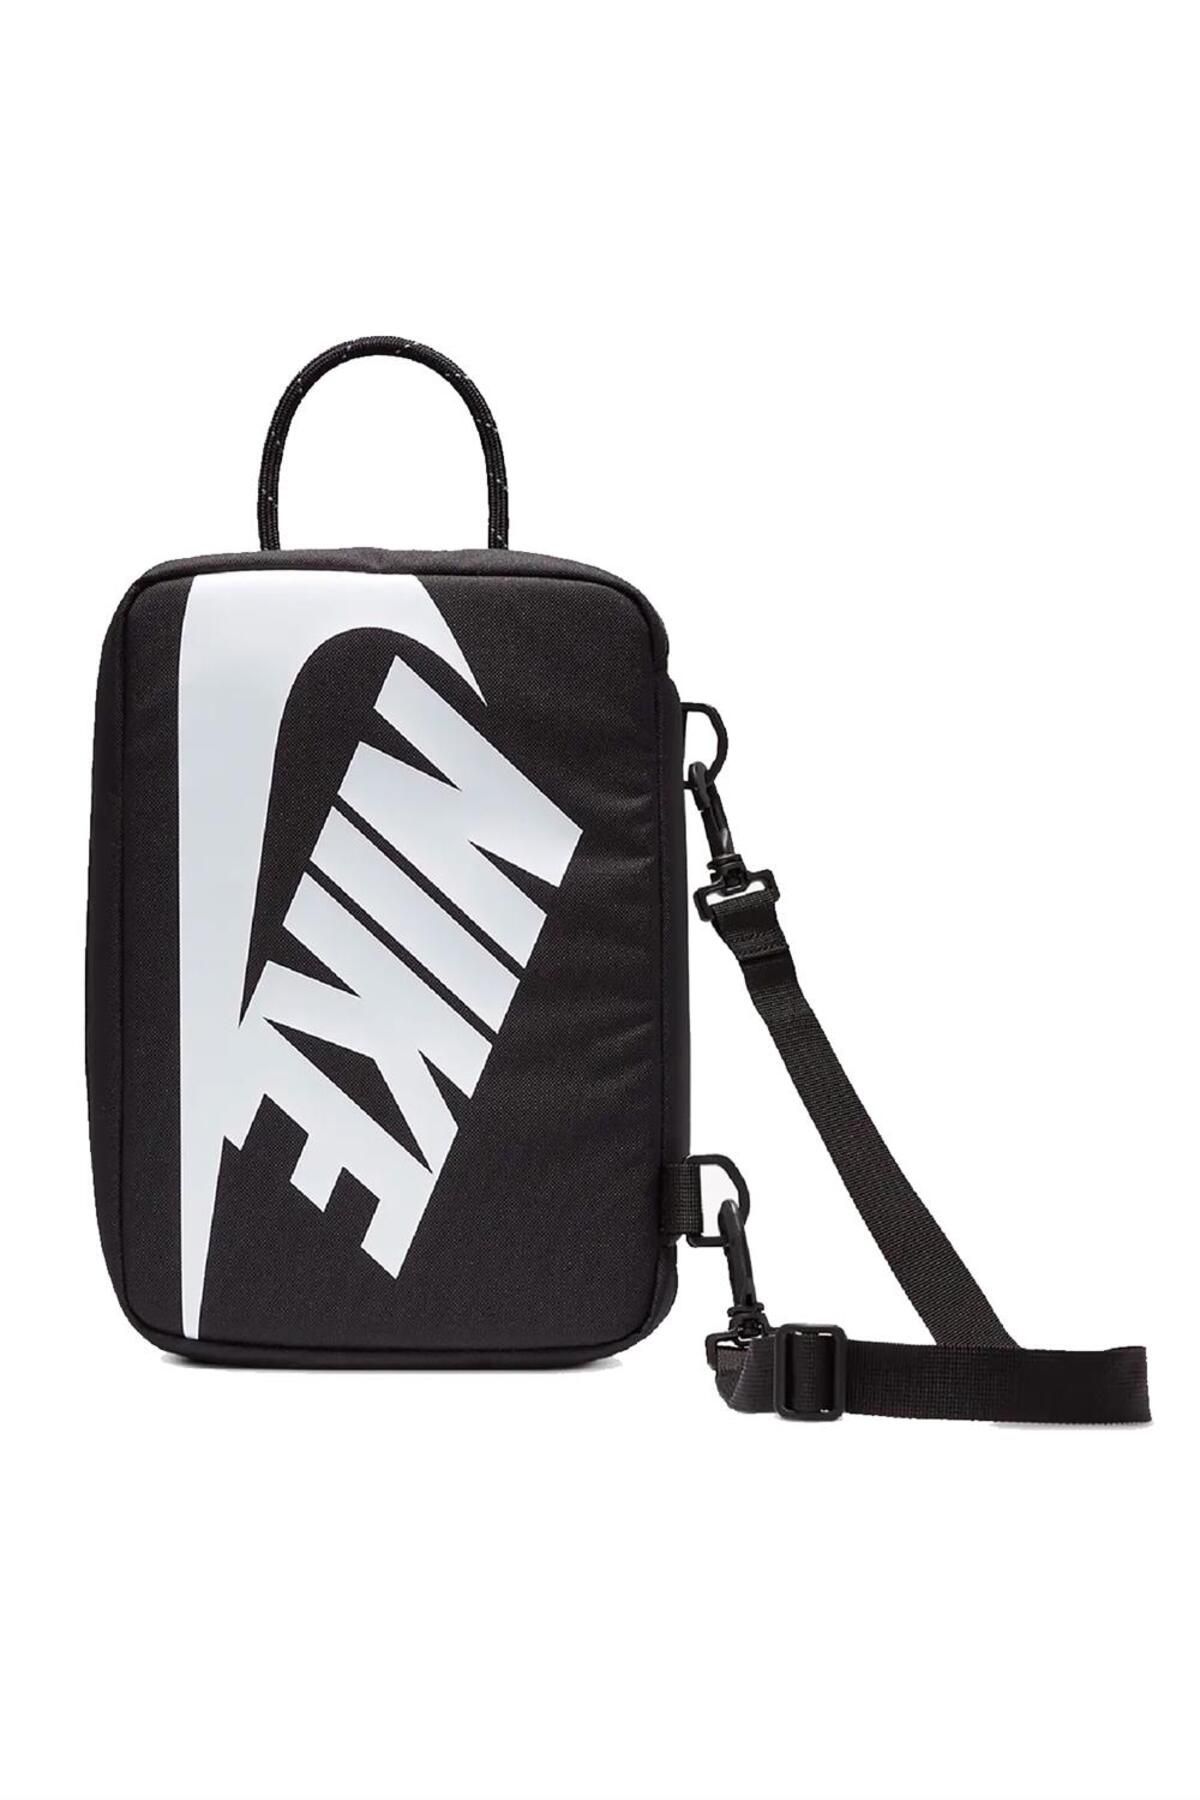 Nike NK Shoe Box Bag Small - Prim Ayakkabı Çantası DV609-010